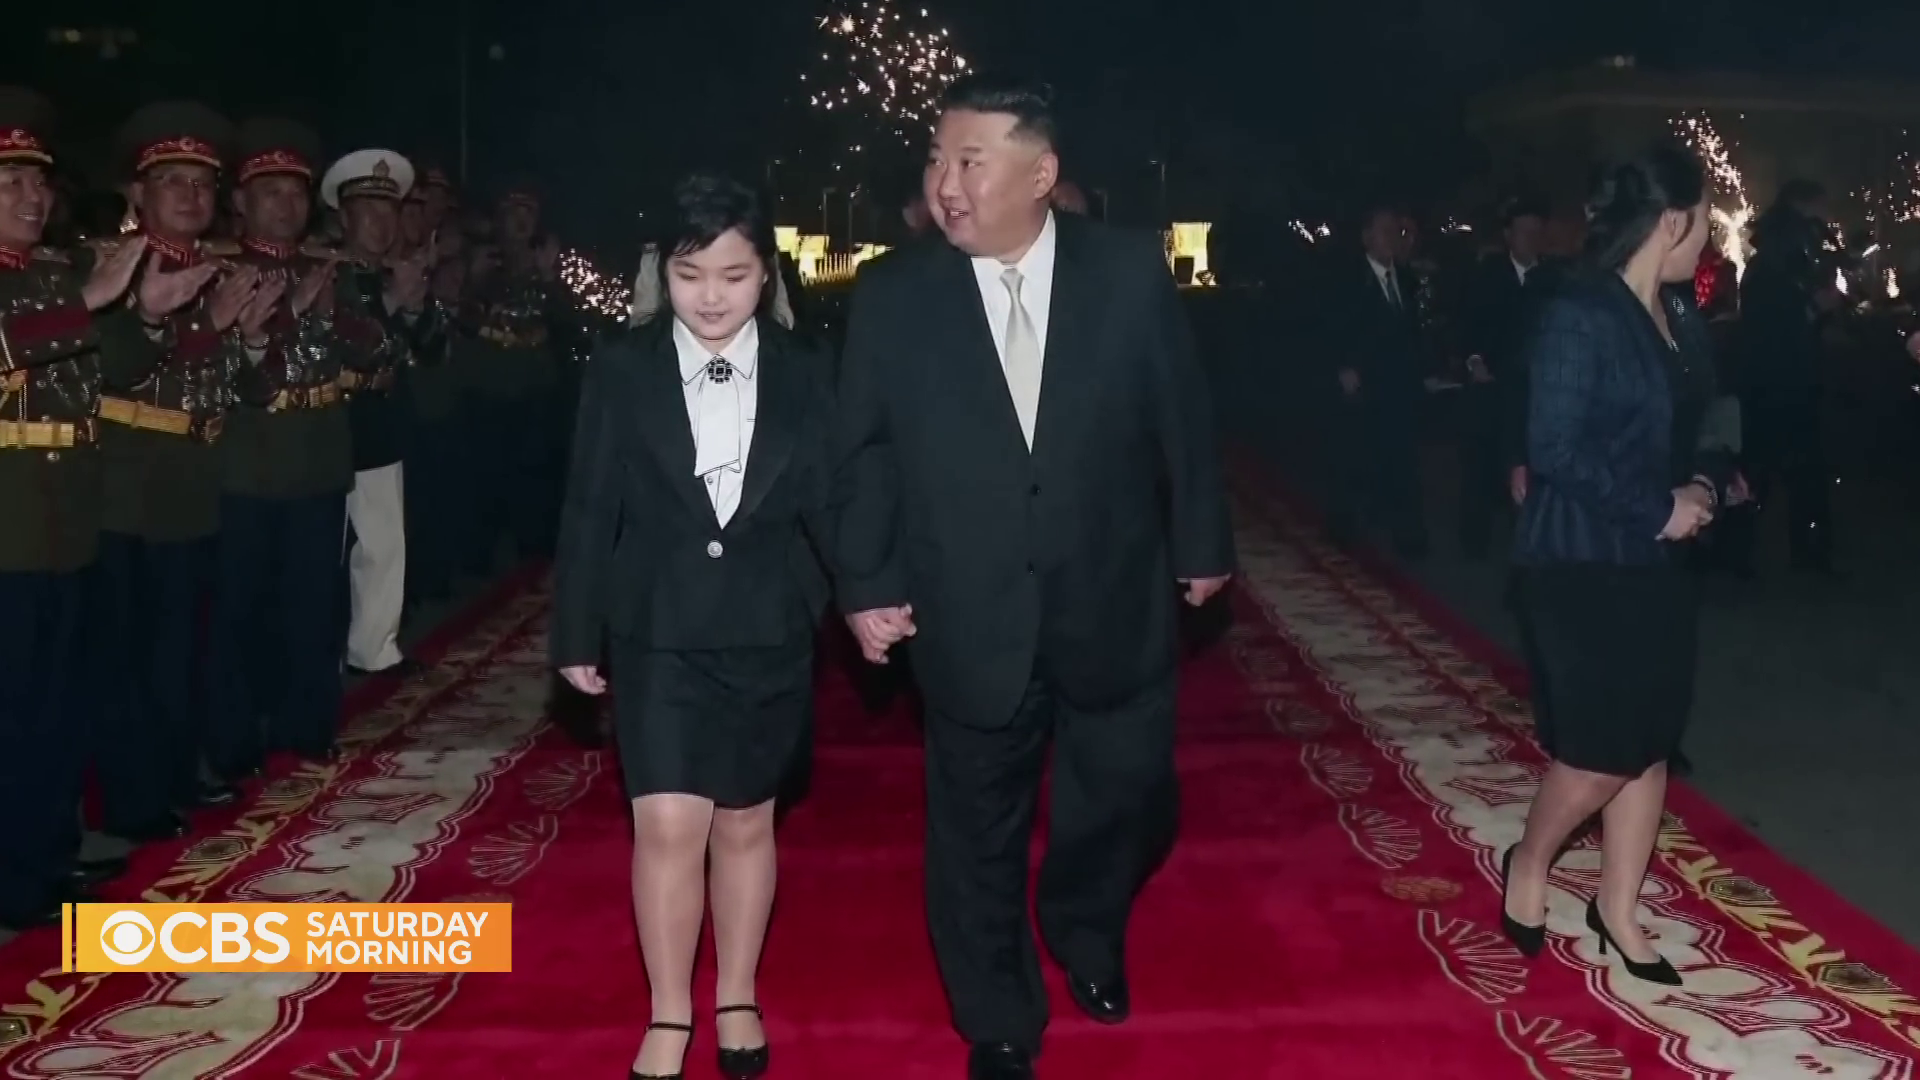 Дочь Ким Чен Ына будет новым лидером КНДР: в одежде девочки заметили четкие сигналы. Фото